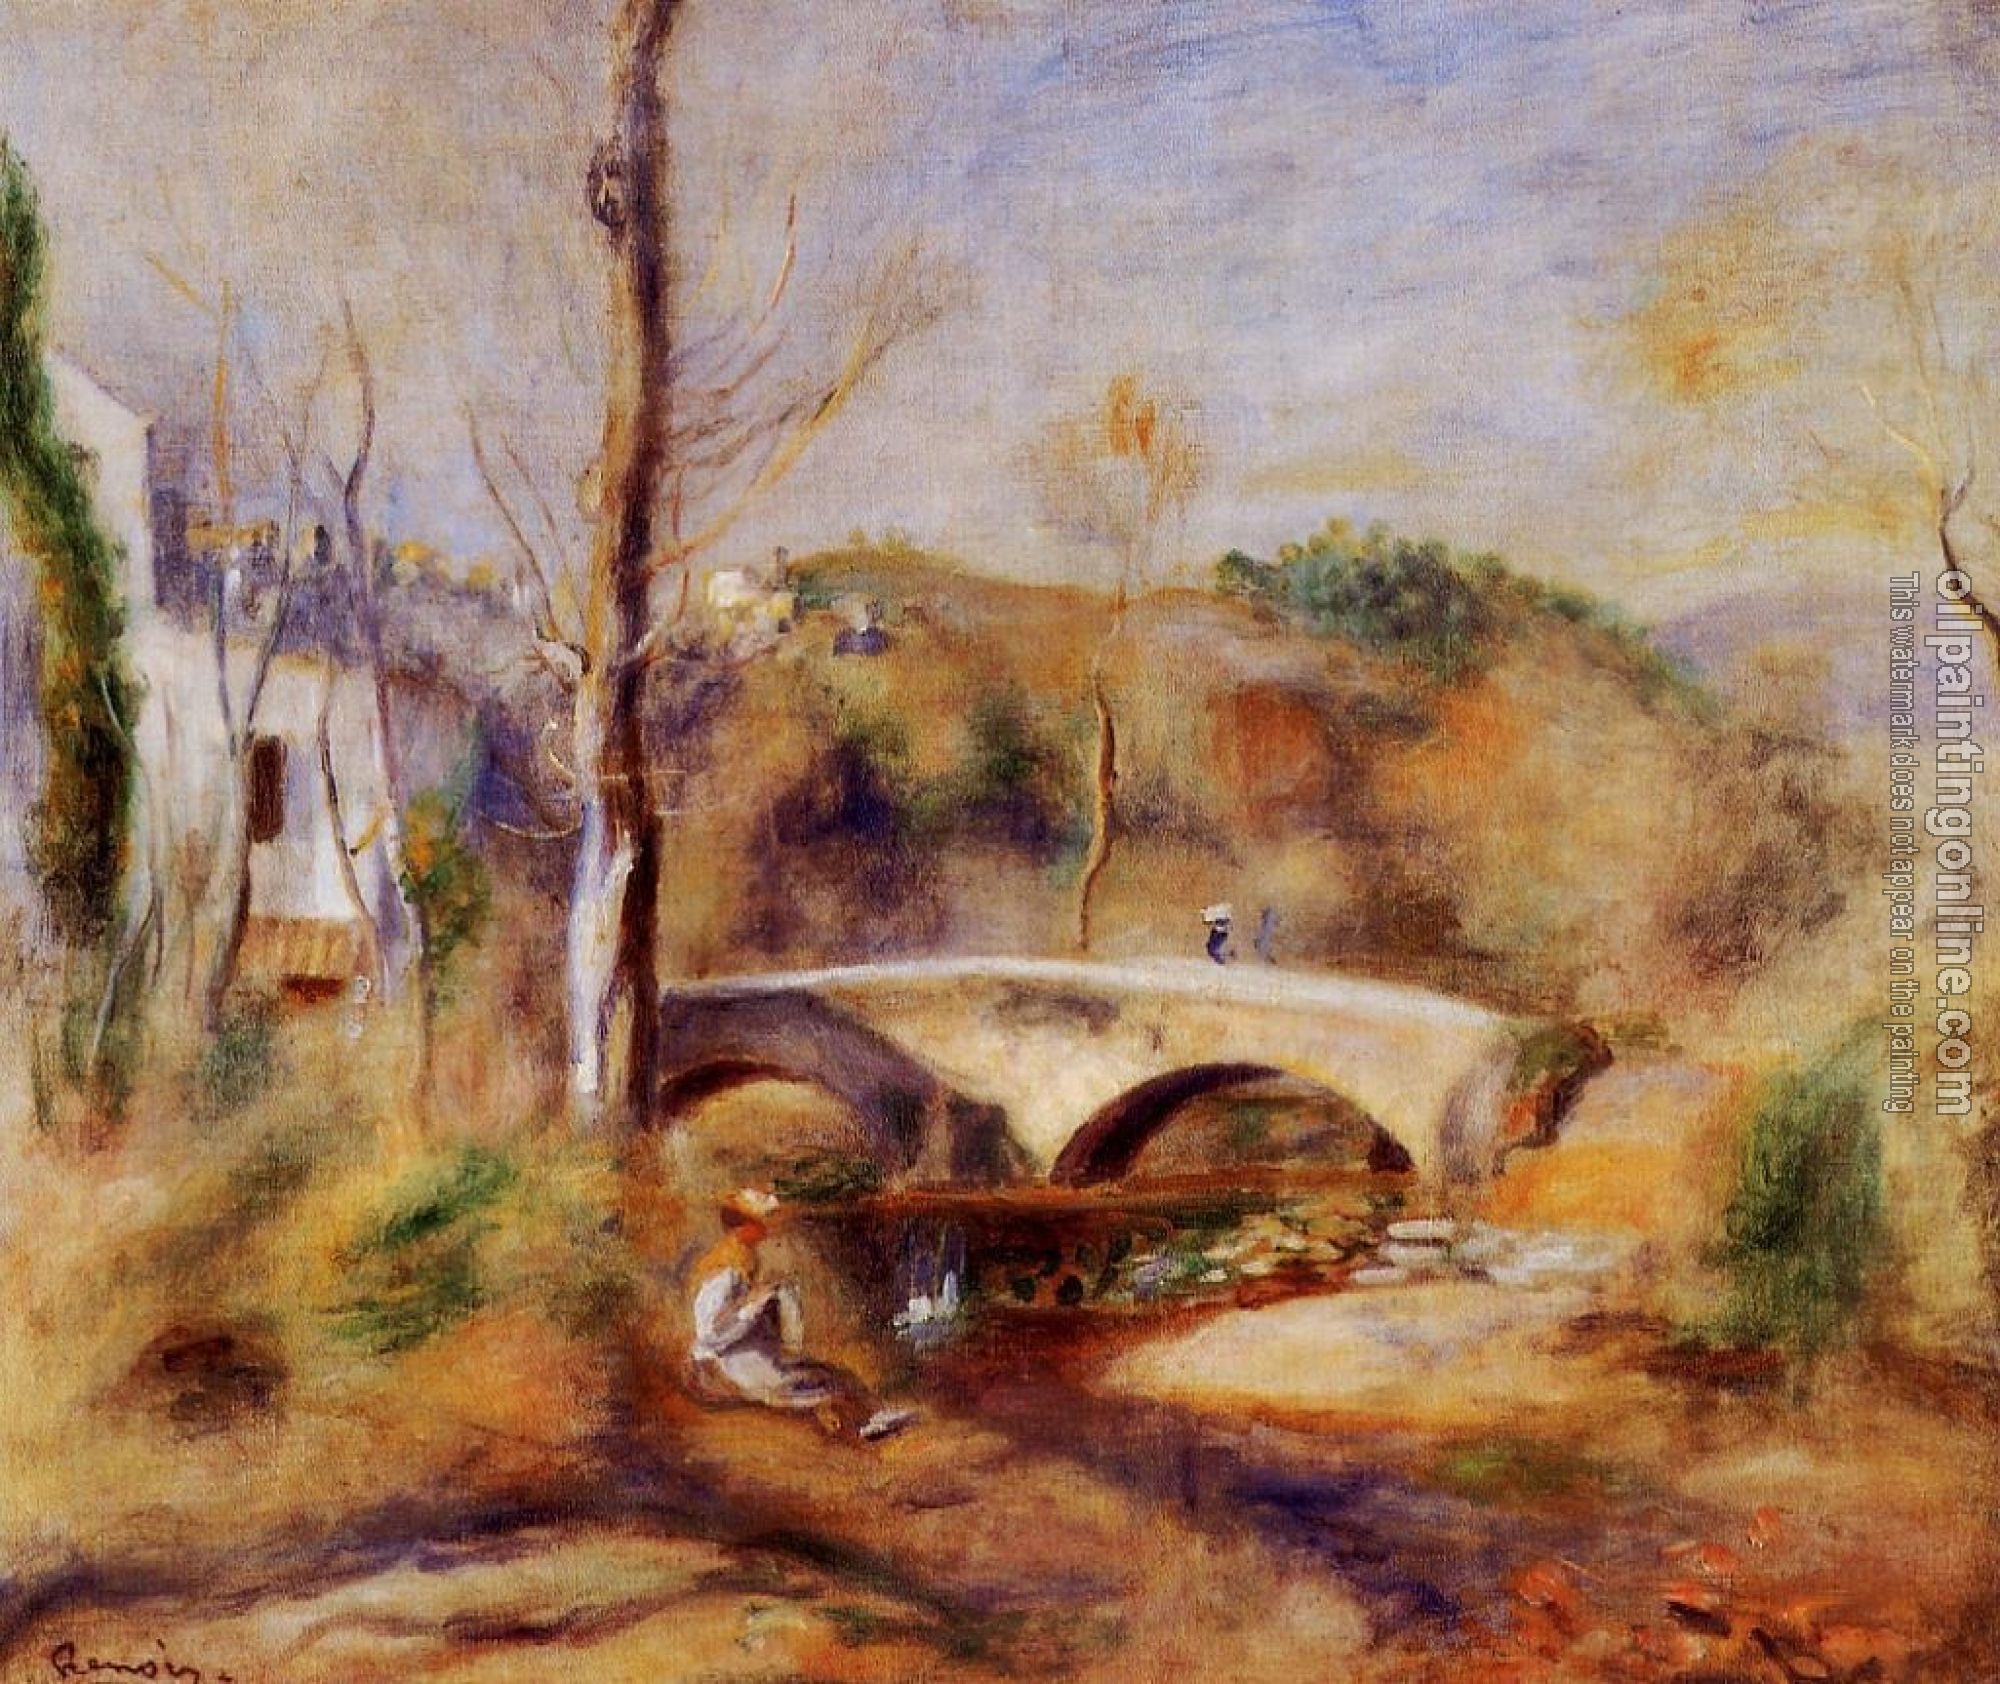 Renoir, Pierre Auguste - Landscape with Bridge